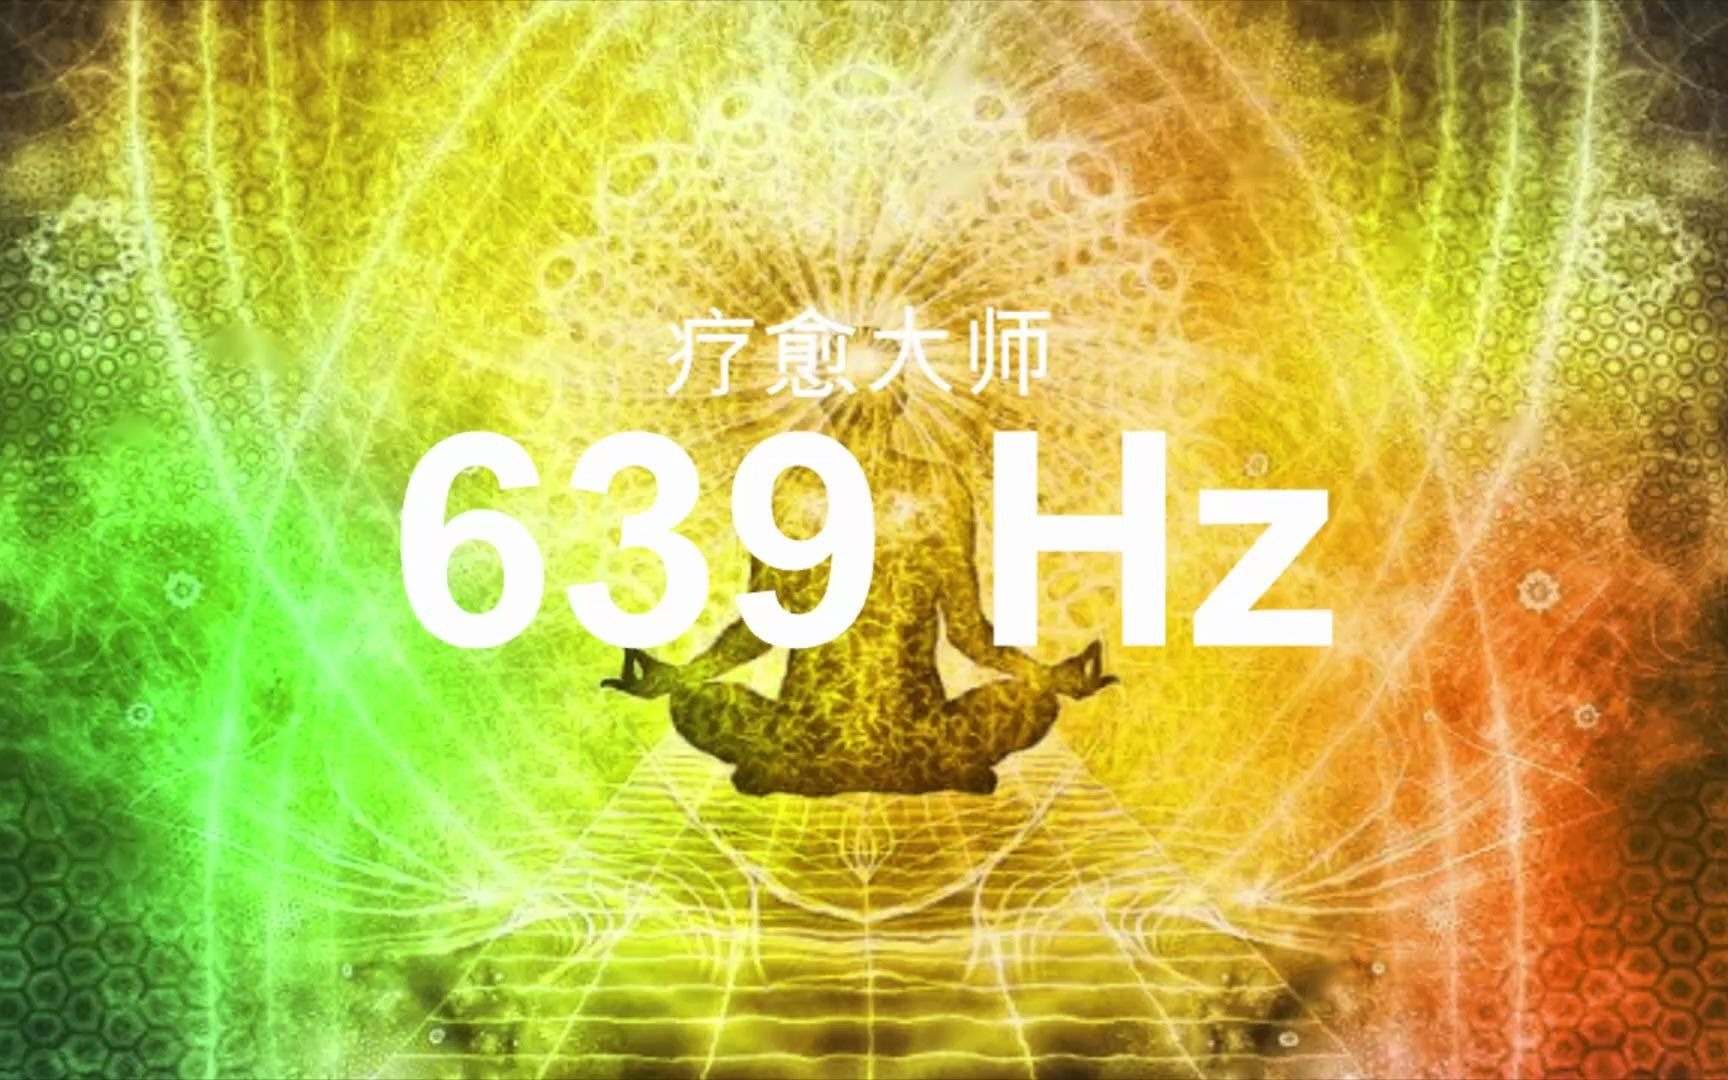 【深度疗愈音乐】639Hz - 心有灵犀 - 激活爱的高频